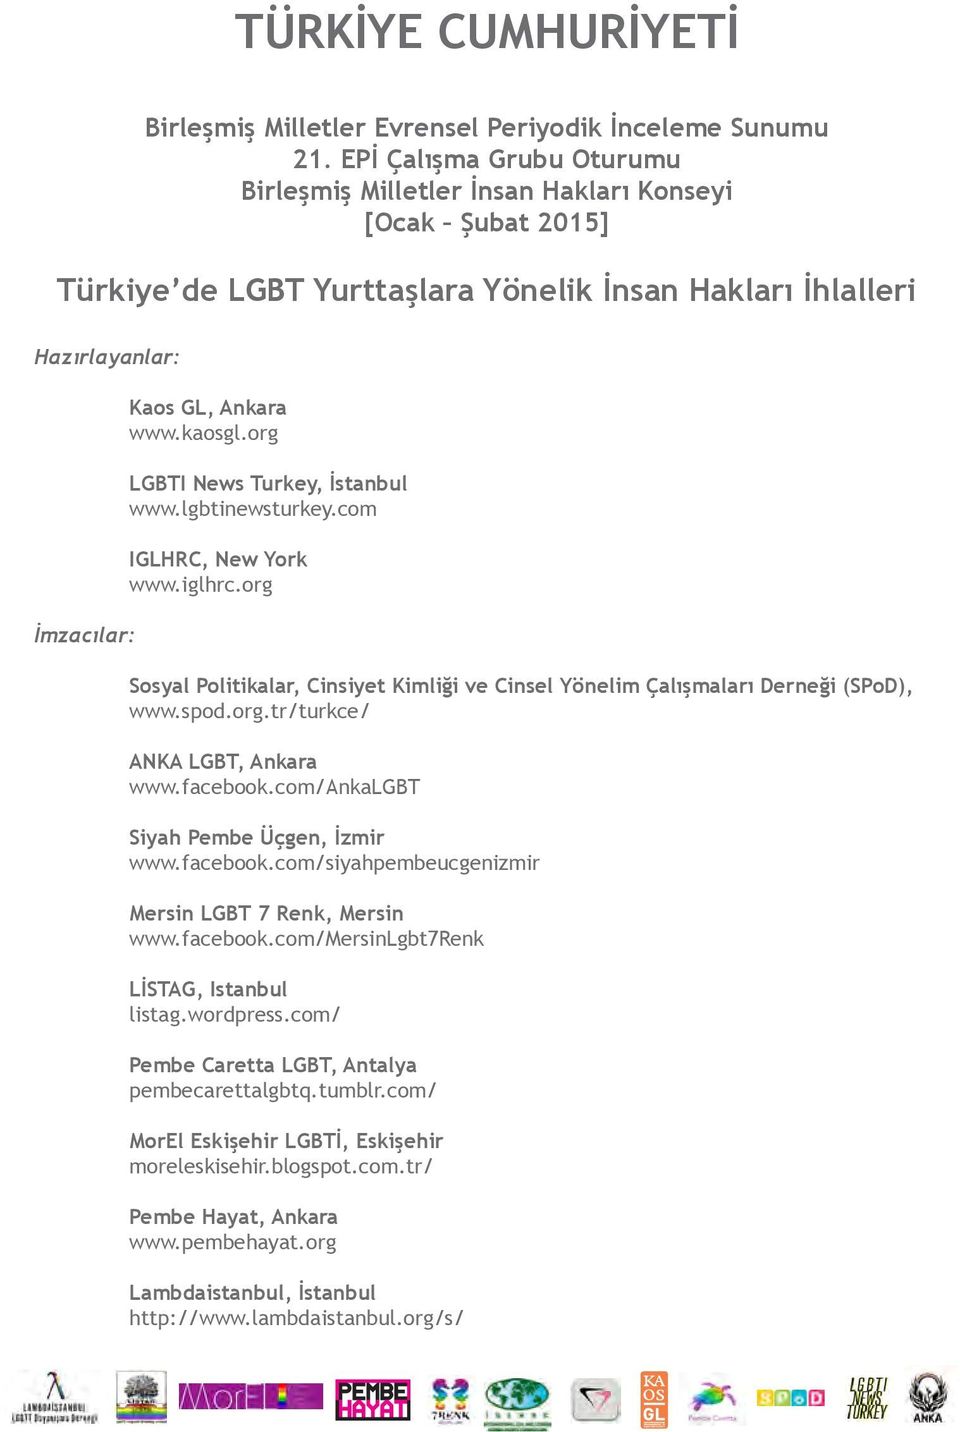 org LGBTI News Turkey, İstanbul www.lgbtinewsturkey.com IGLHRC, New York www.iglhrc.org Sosyal Politikalar, Cinsiyet Kimliği ve Cinsel Yönelim Çalışmaları Derneği (SPoD), www.spod.org.tr/turkce/ ANKA LGBT, Ankara www.